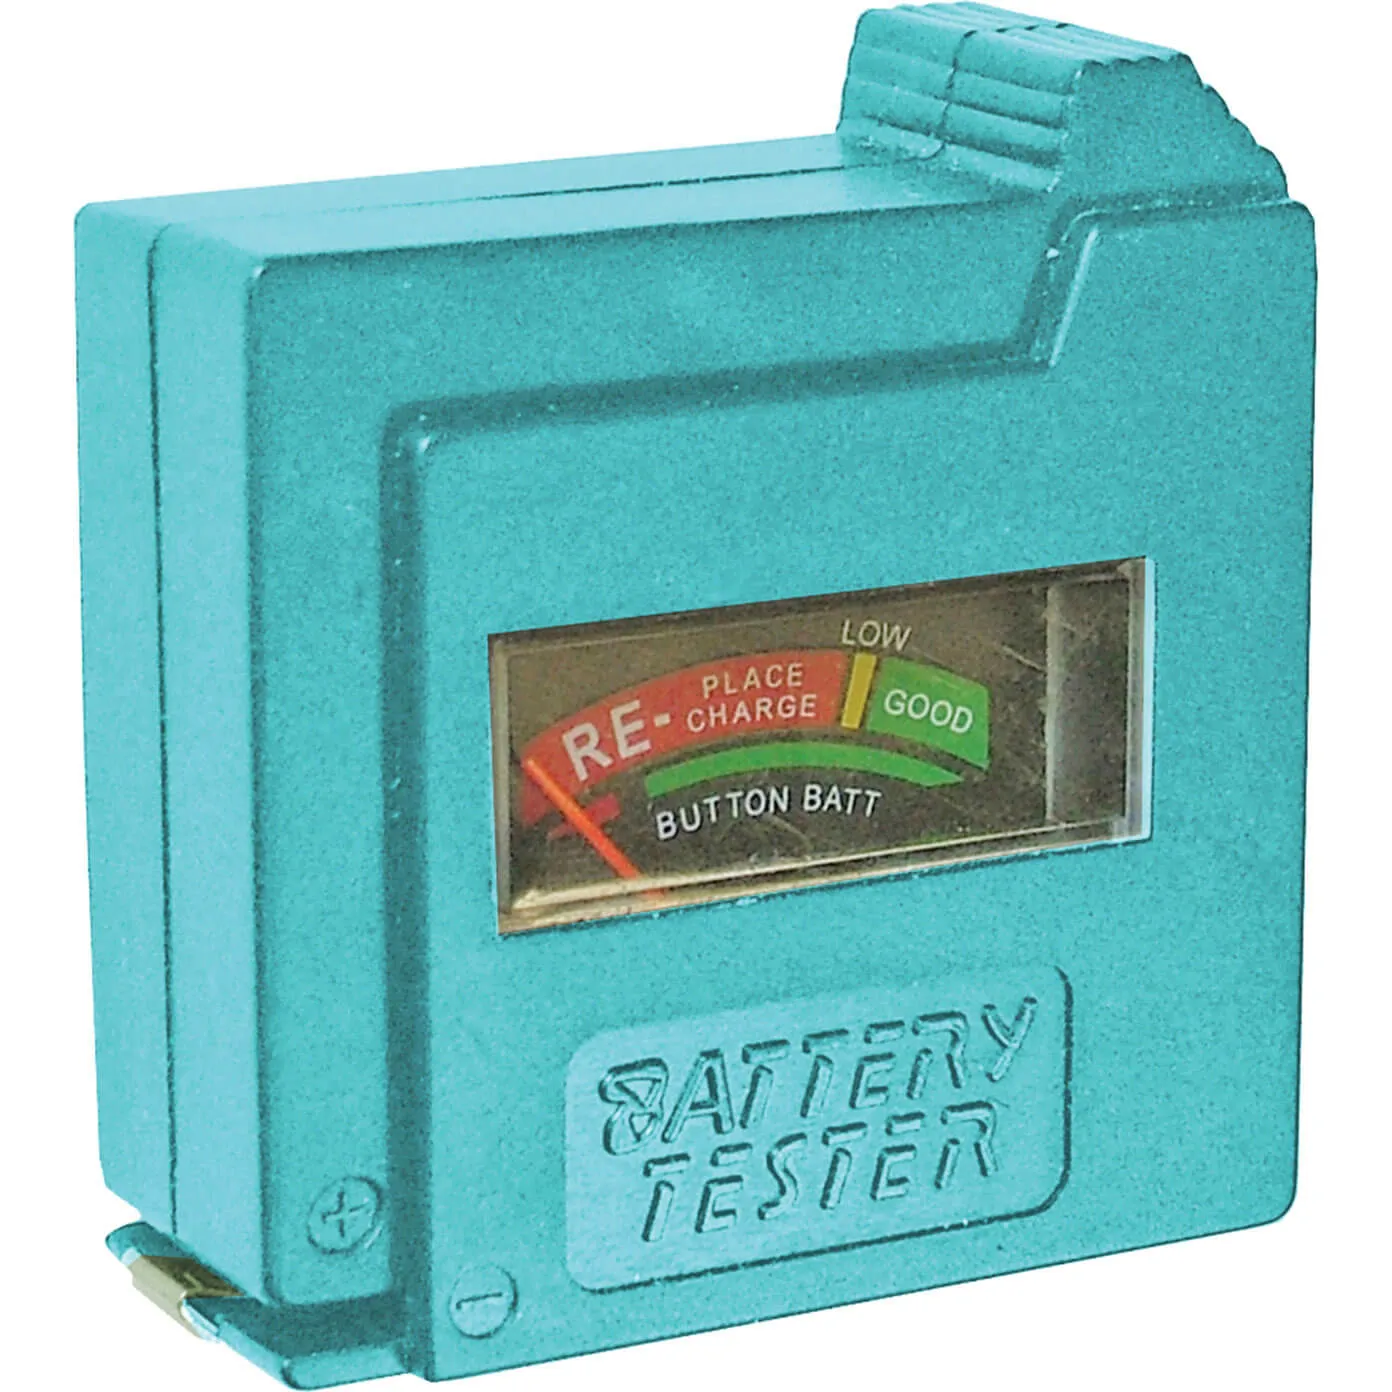 Faithfull Battery Tester